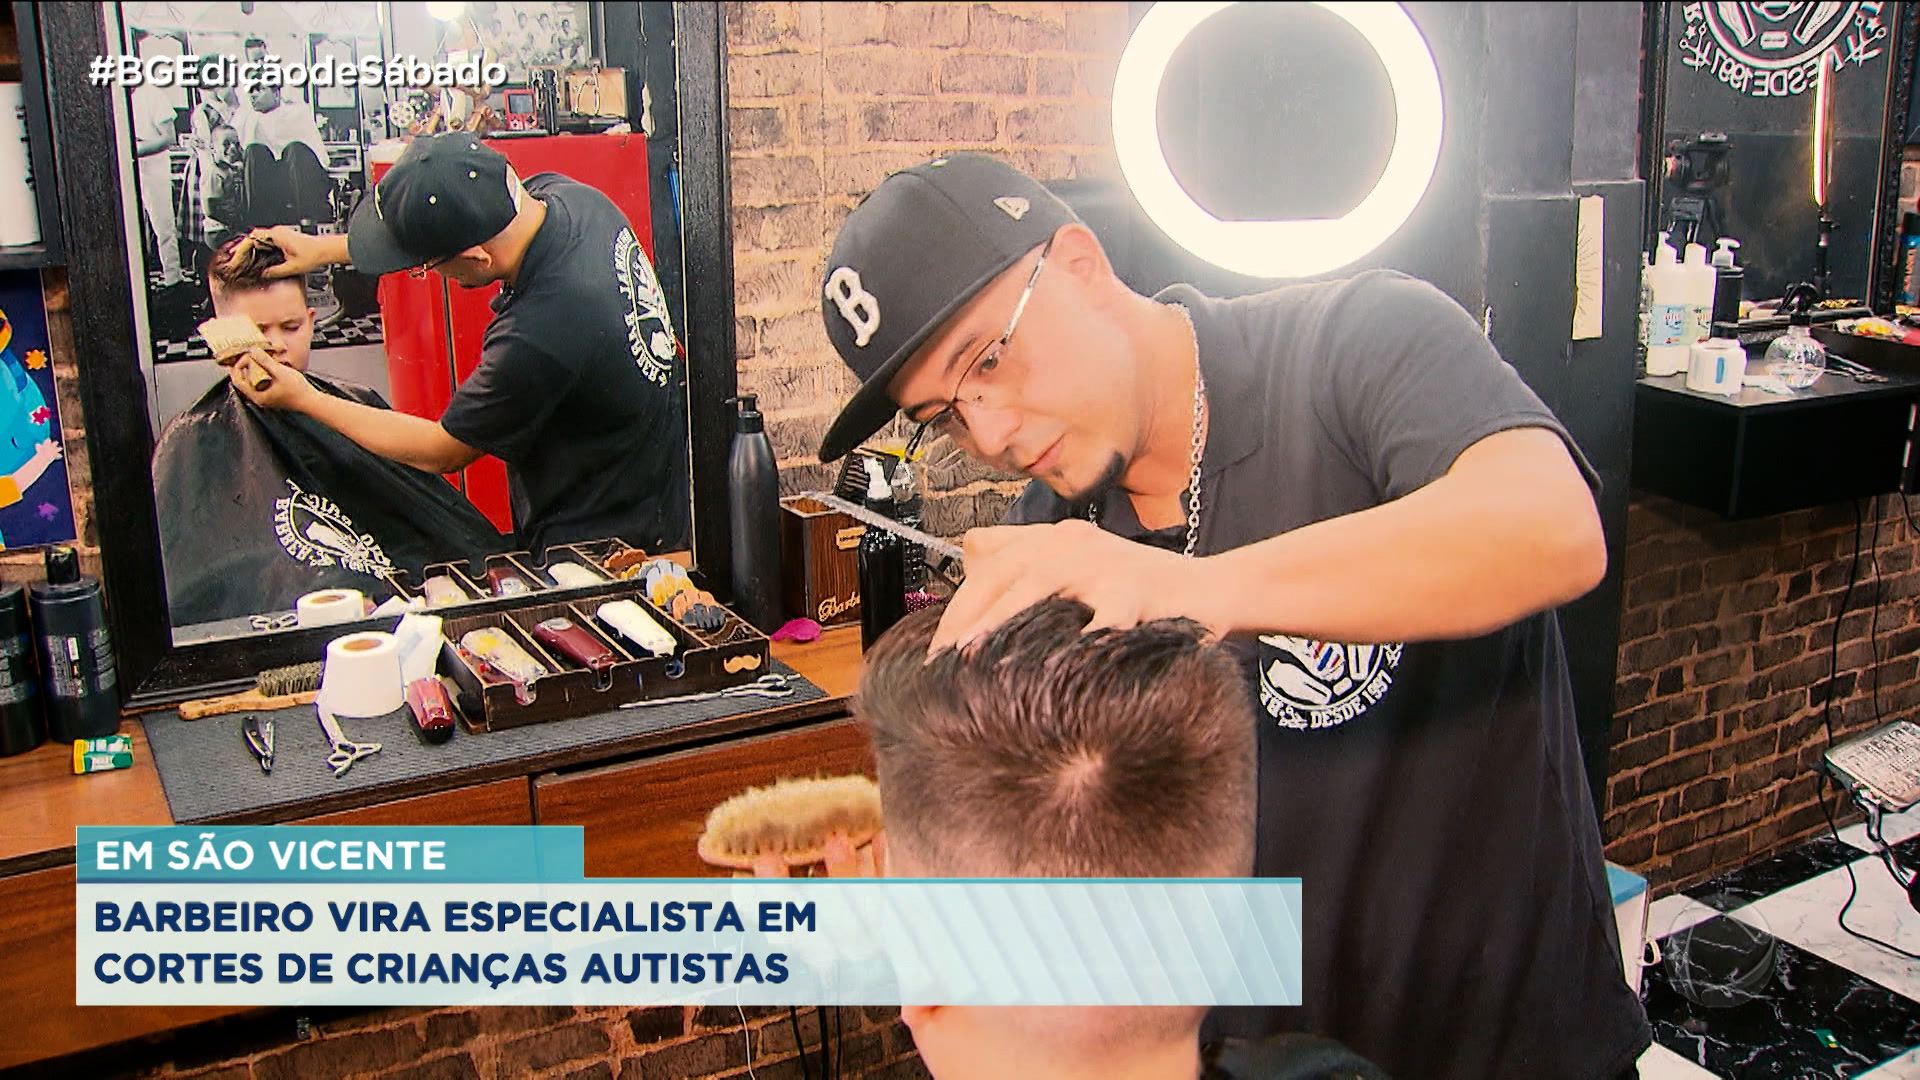 Vídeo: Barbeiro se especializa em atendimento á autistas